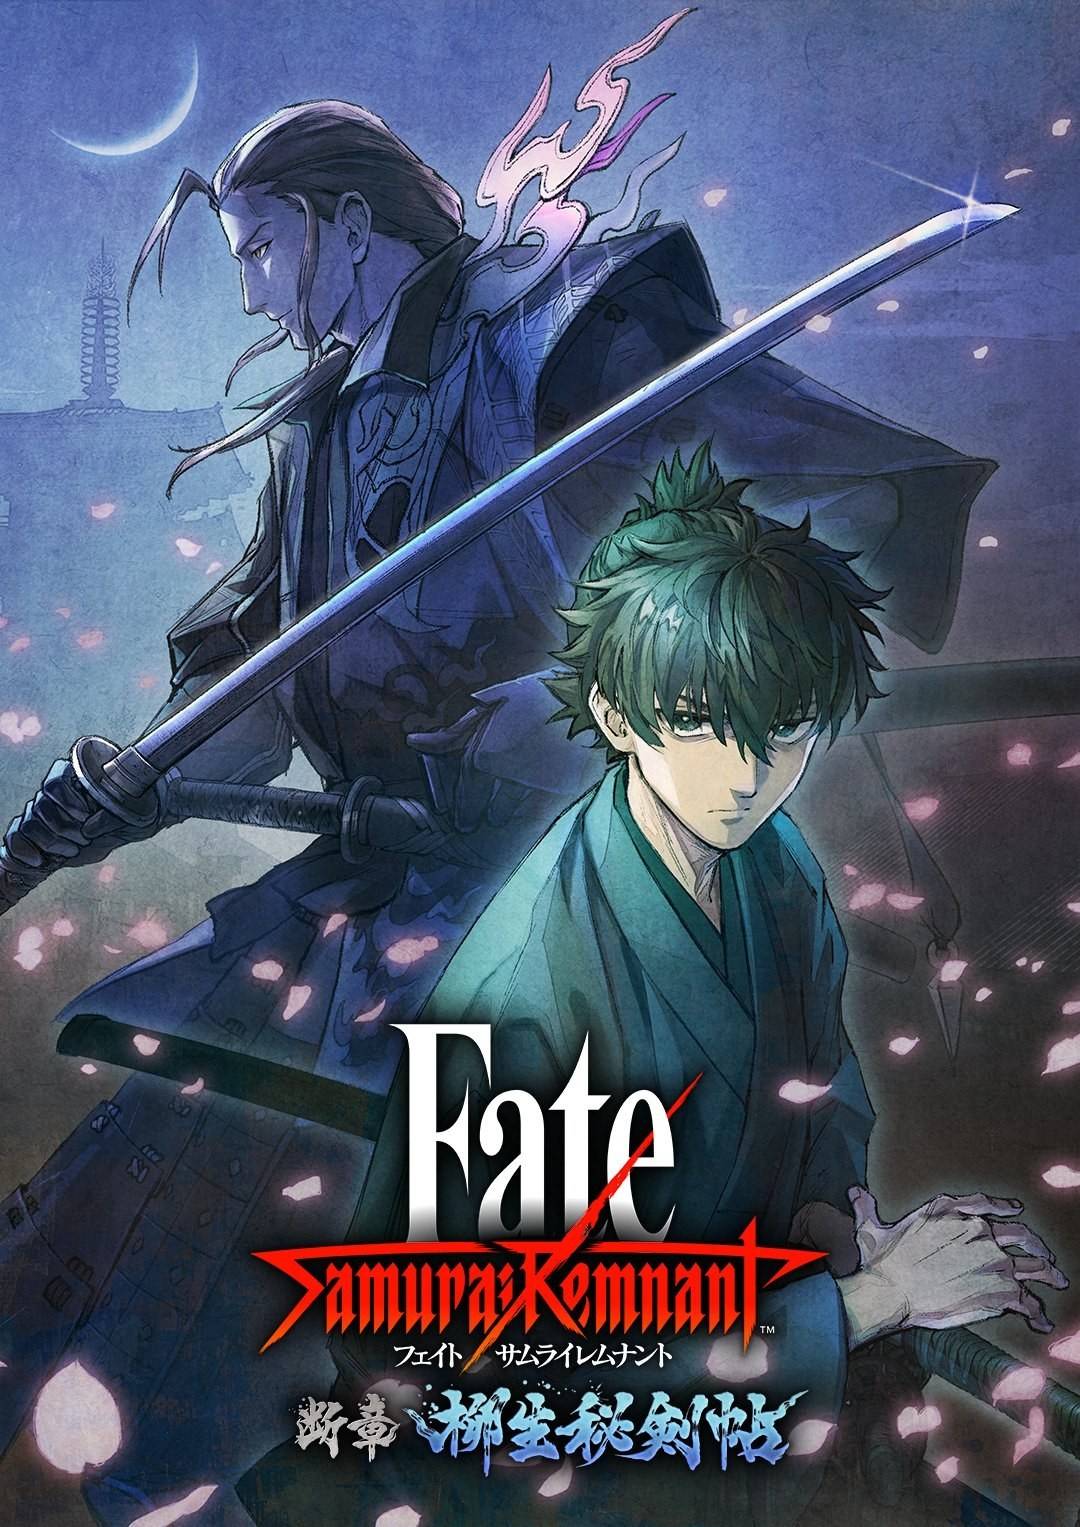 柳生爷爷年轻时《Fate/Samurai Remnant》第二波DLC「断章・柳生秘剣帖」4/18上线